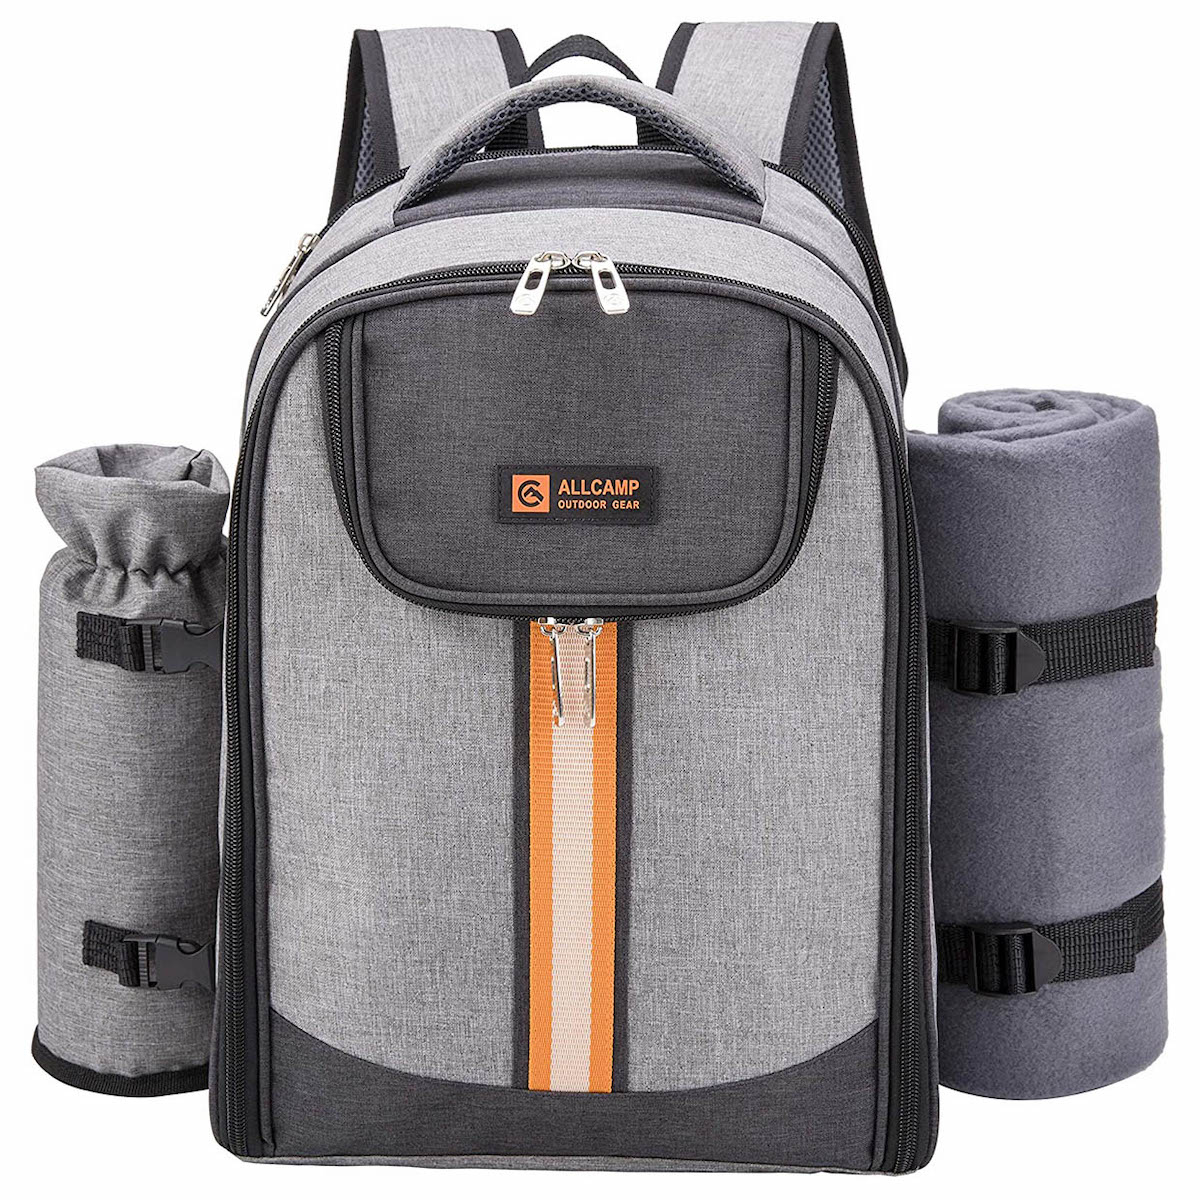 Picnic Backpack Bag for 4